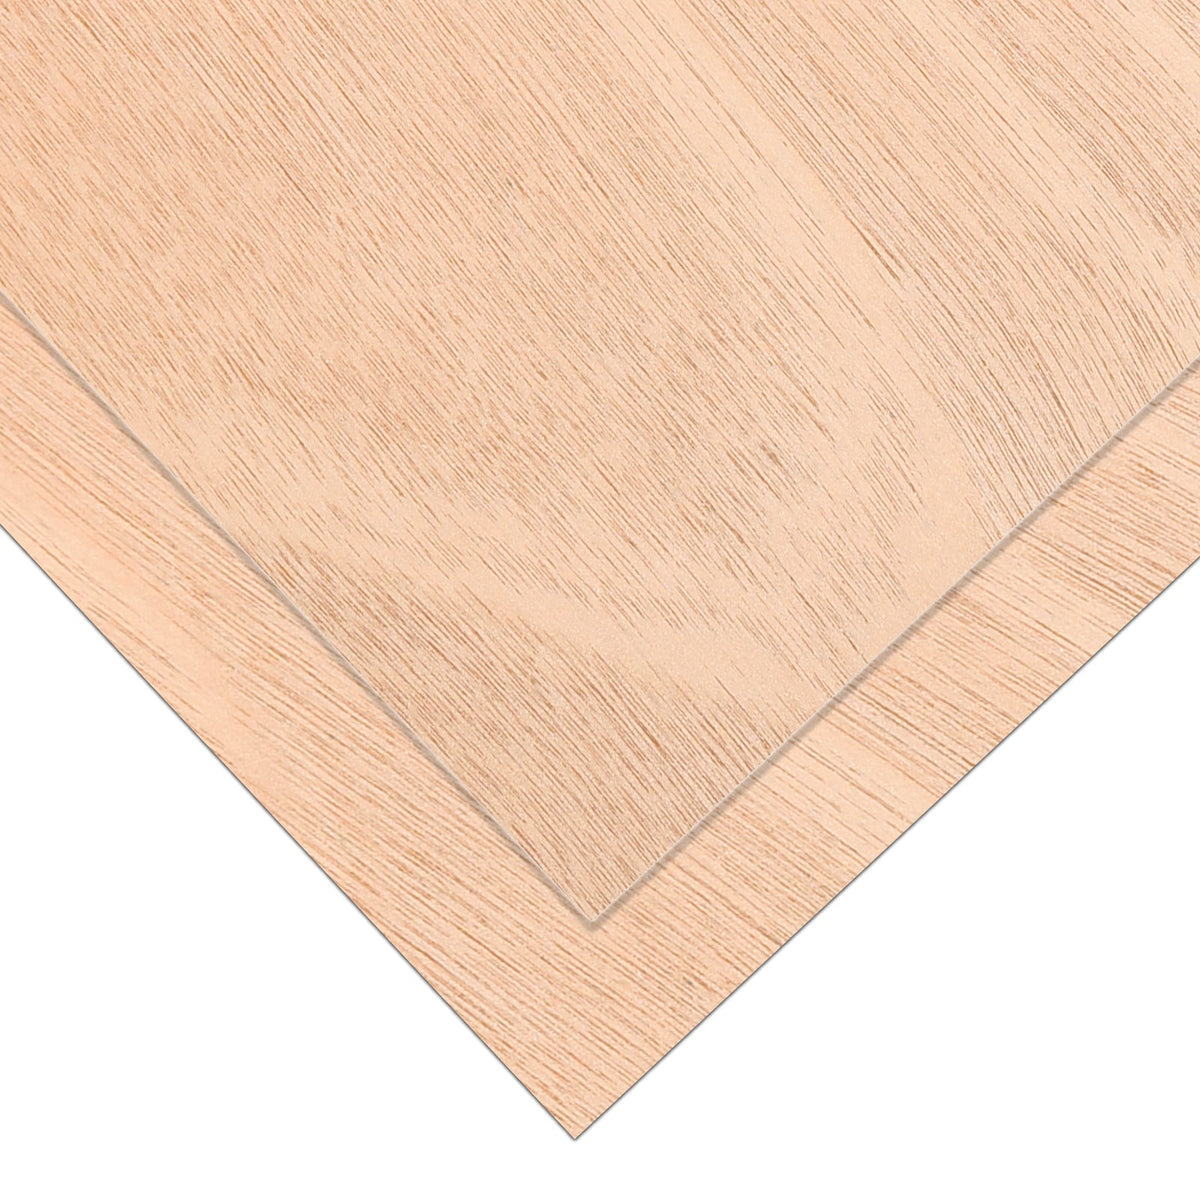 6 Stück Mahagoni-Sperrholz, 12 x 12, unbehandeltes Holz für Lasergravur, CNC-Schneiden, Basteln, Malen